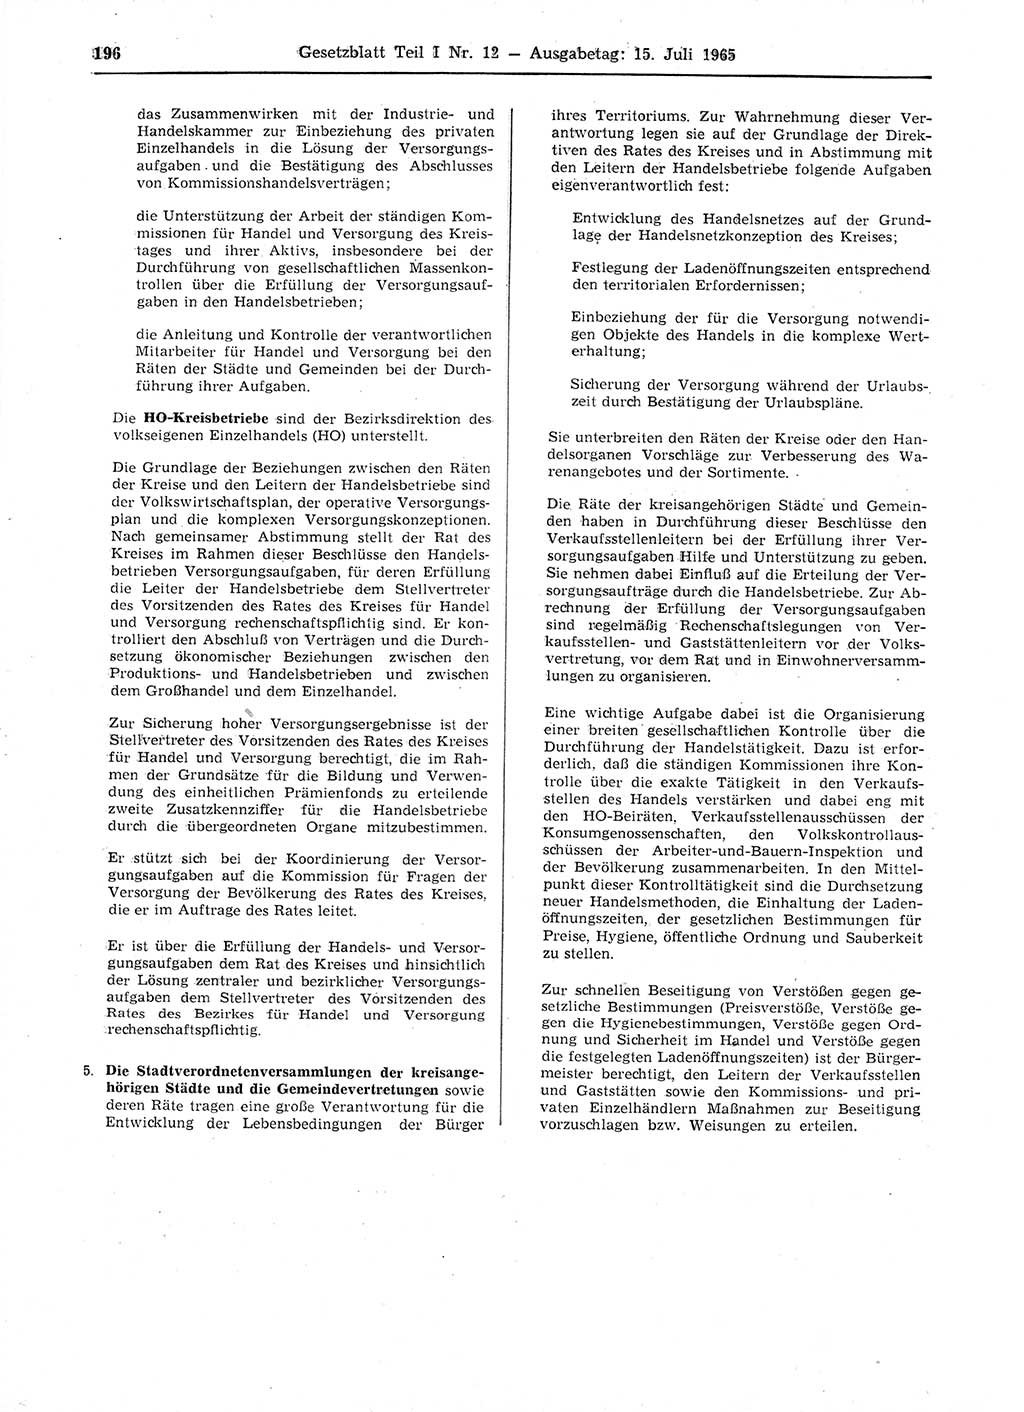 Gesetzblatt (GBl.) der Deutschen Demokratischen Republik (DDR) Teil Ⅰ 1965, Seite 196 (GBl. DDR Ⅰ 1965, S. 196)